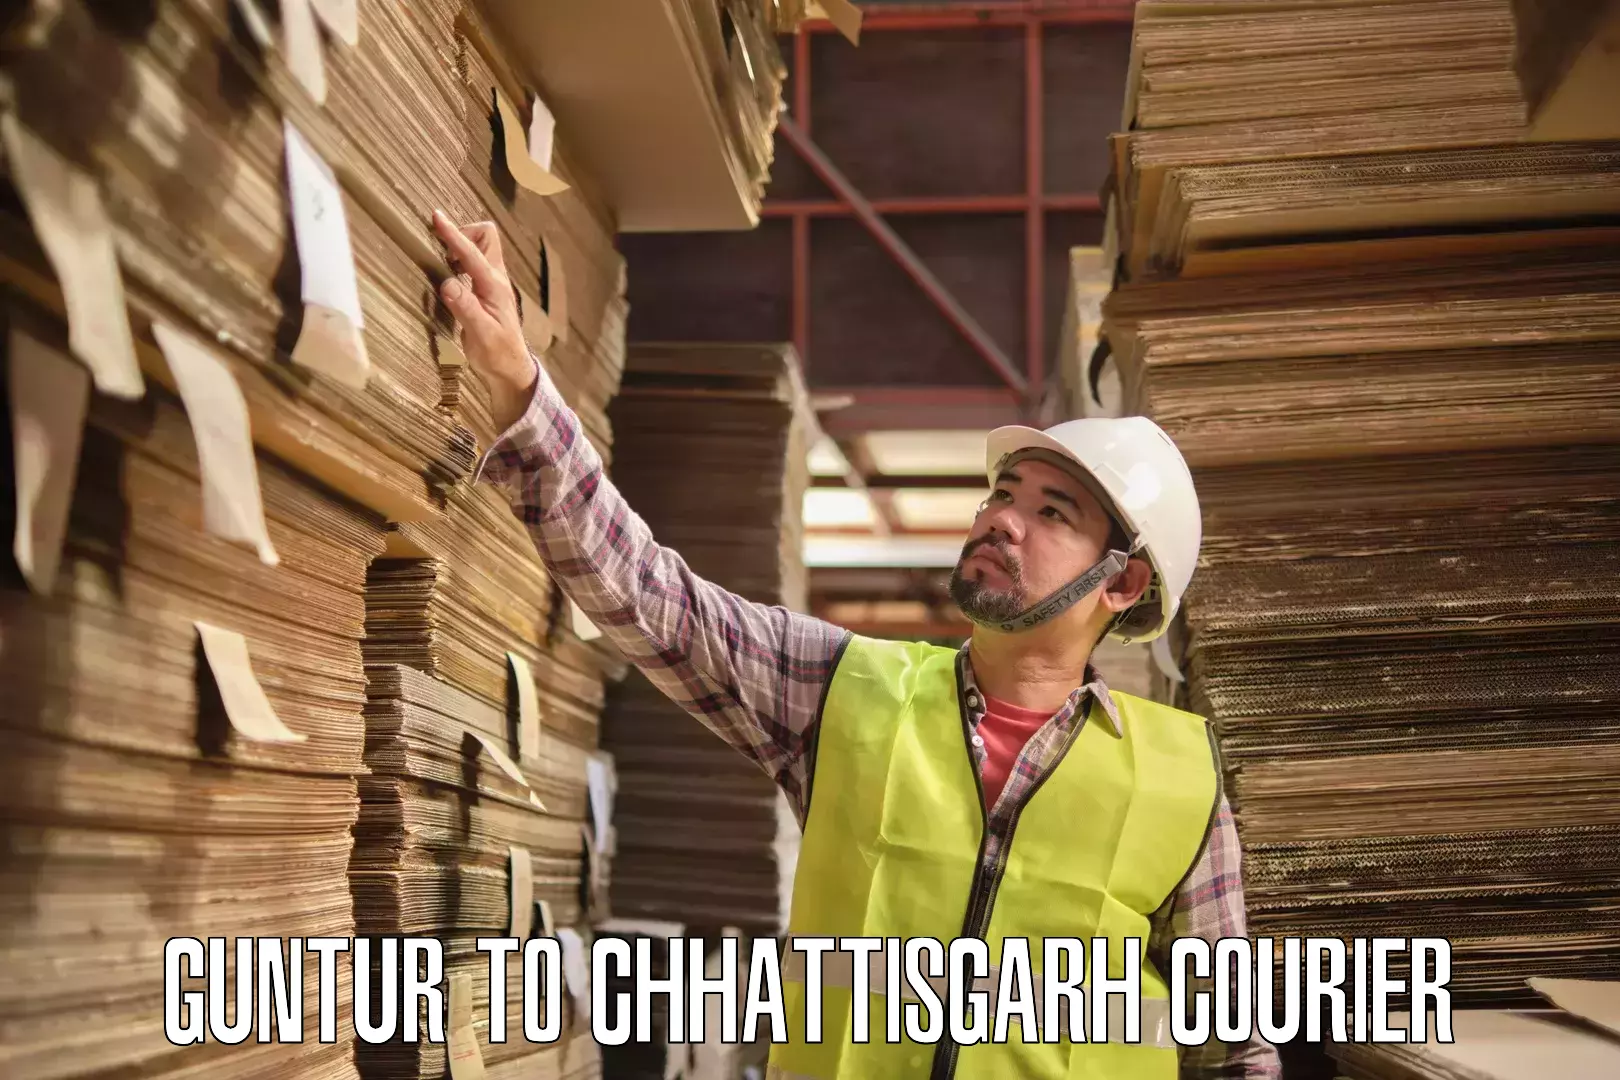 Courier service booking Guntur to Chhattisgarh